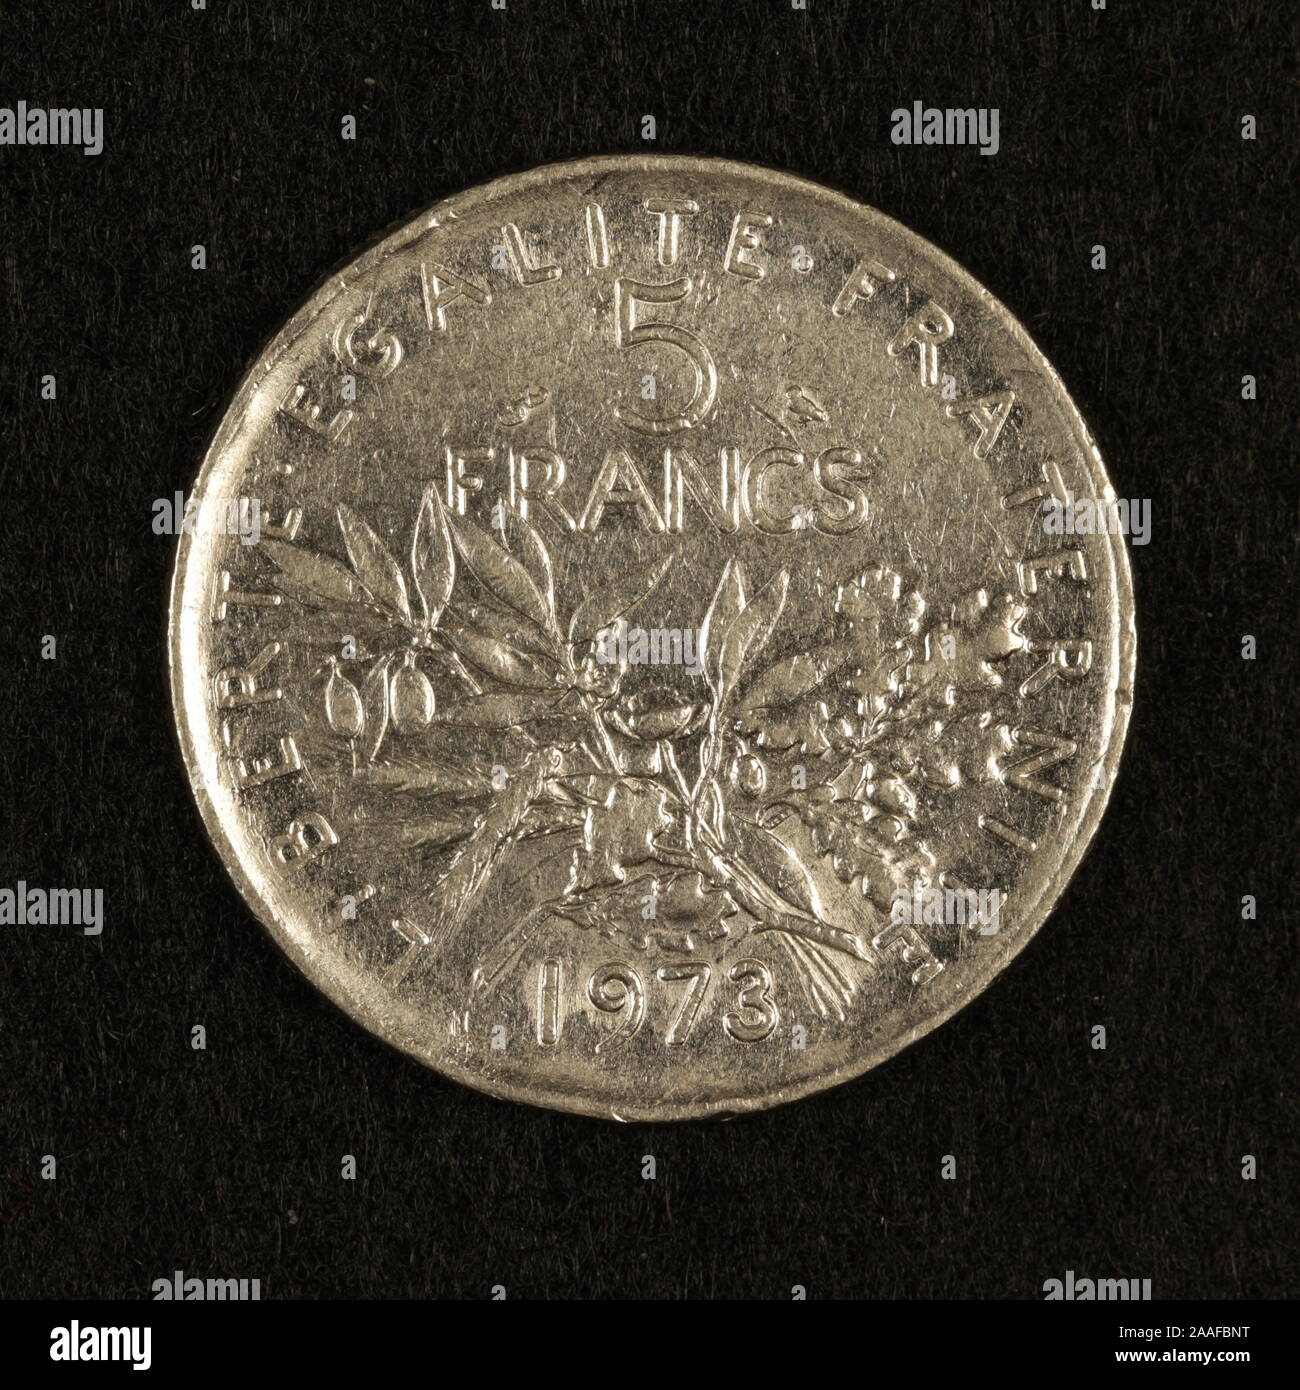 Vorderseite einer ehemaligen Französischen 5 Francs-Münze Foto Stock